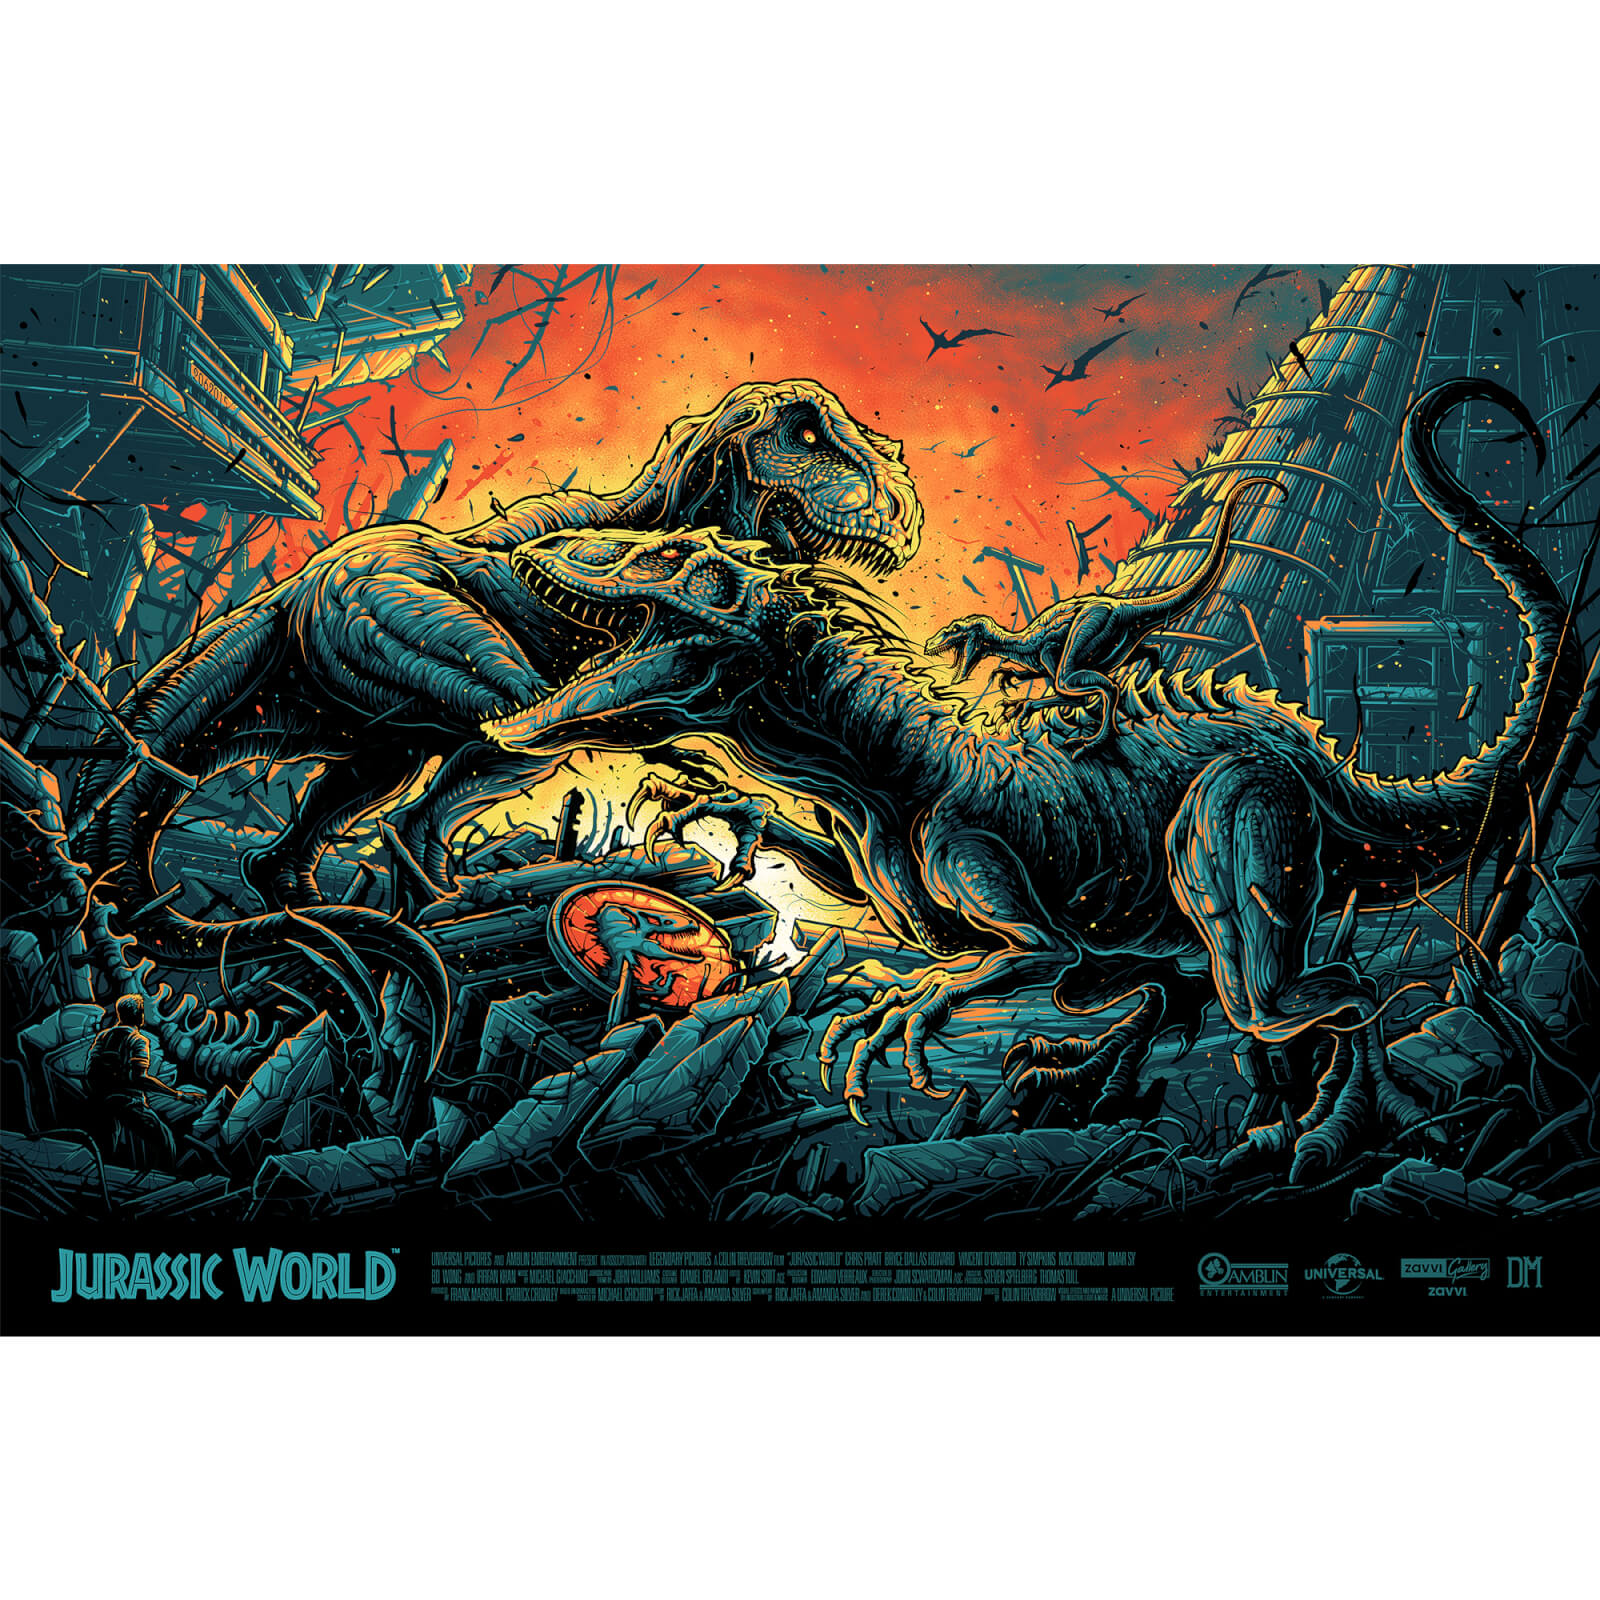 Jurassic World Screenprint by Dan Mumford